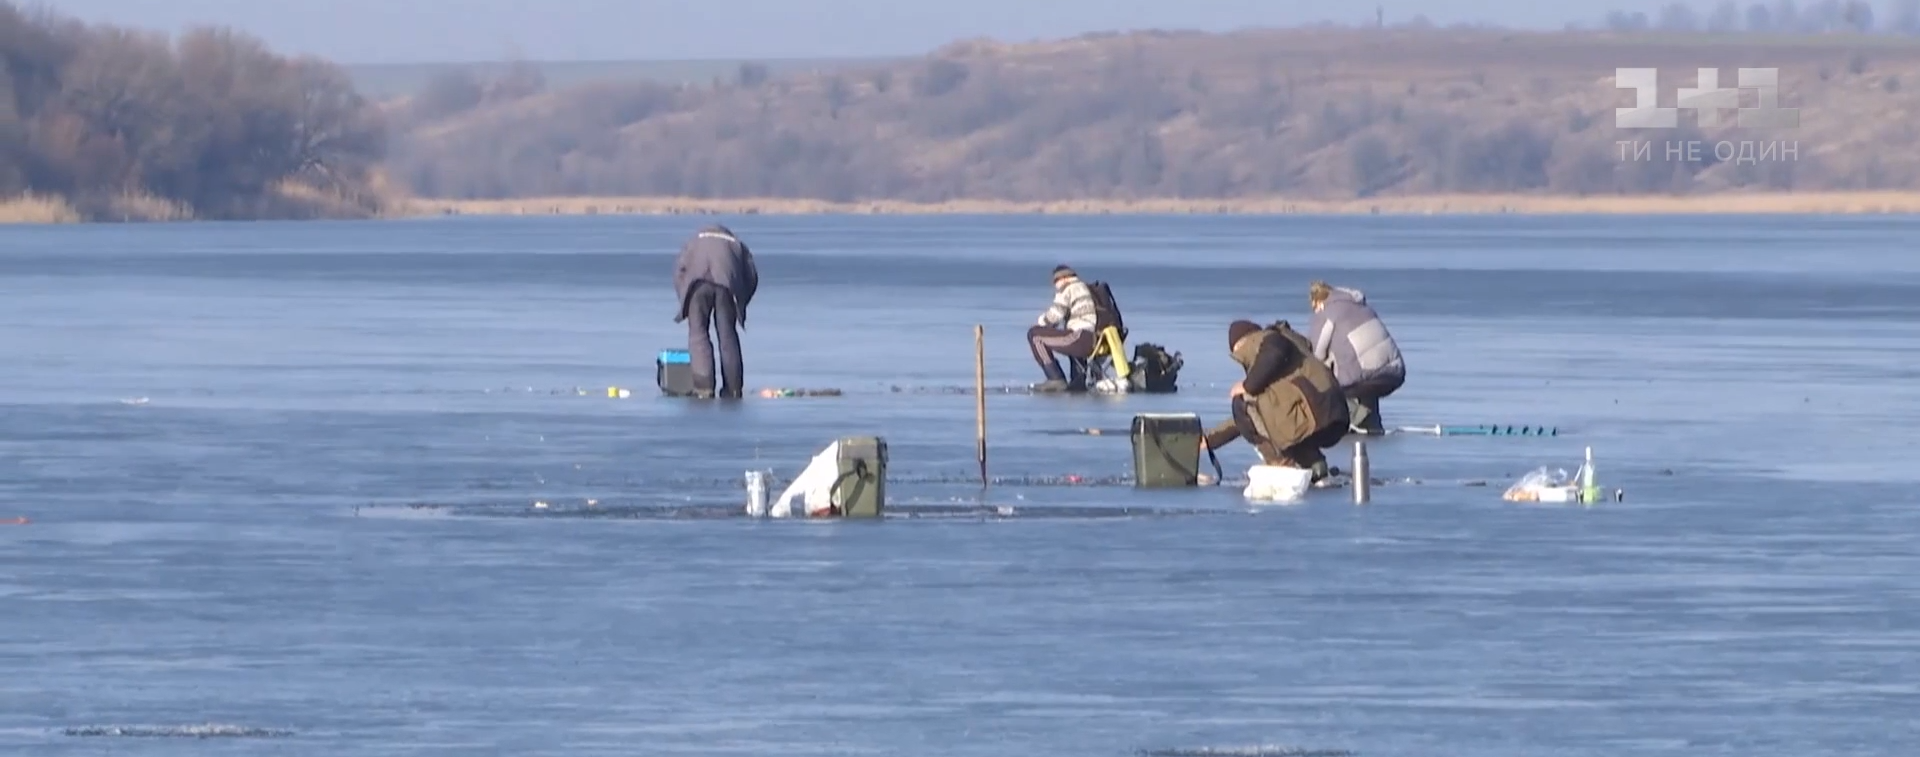 В Украине за сутки утонули пятеро рыбаков. В ГСЧС предупреждают о тонком льде на воде